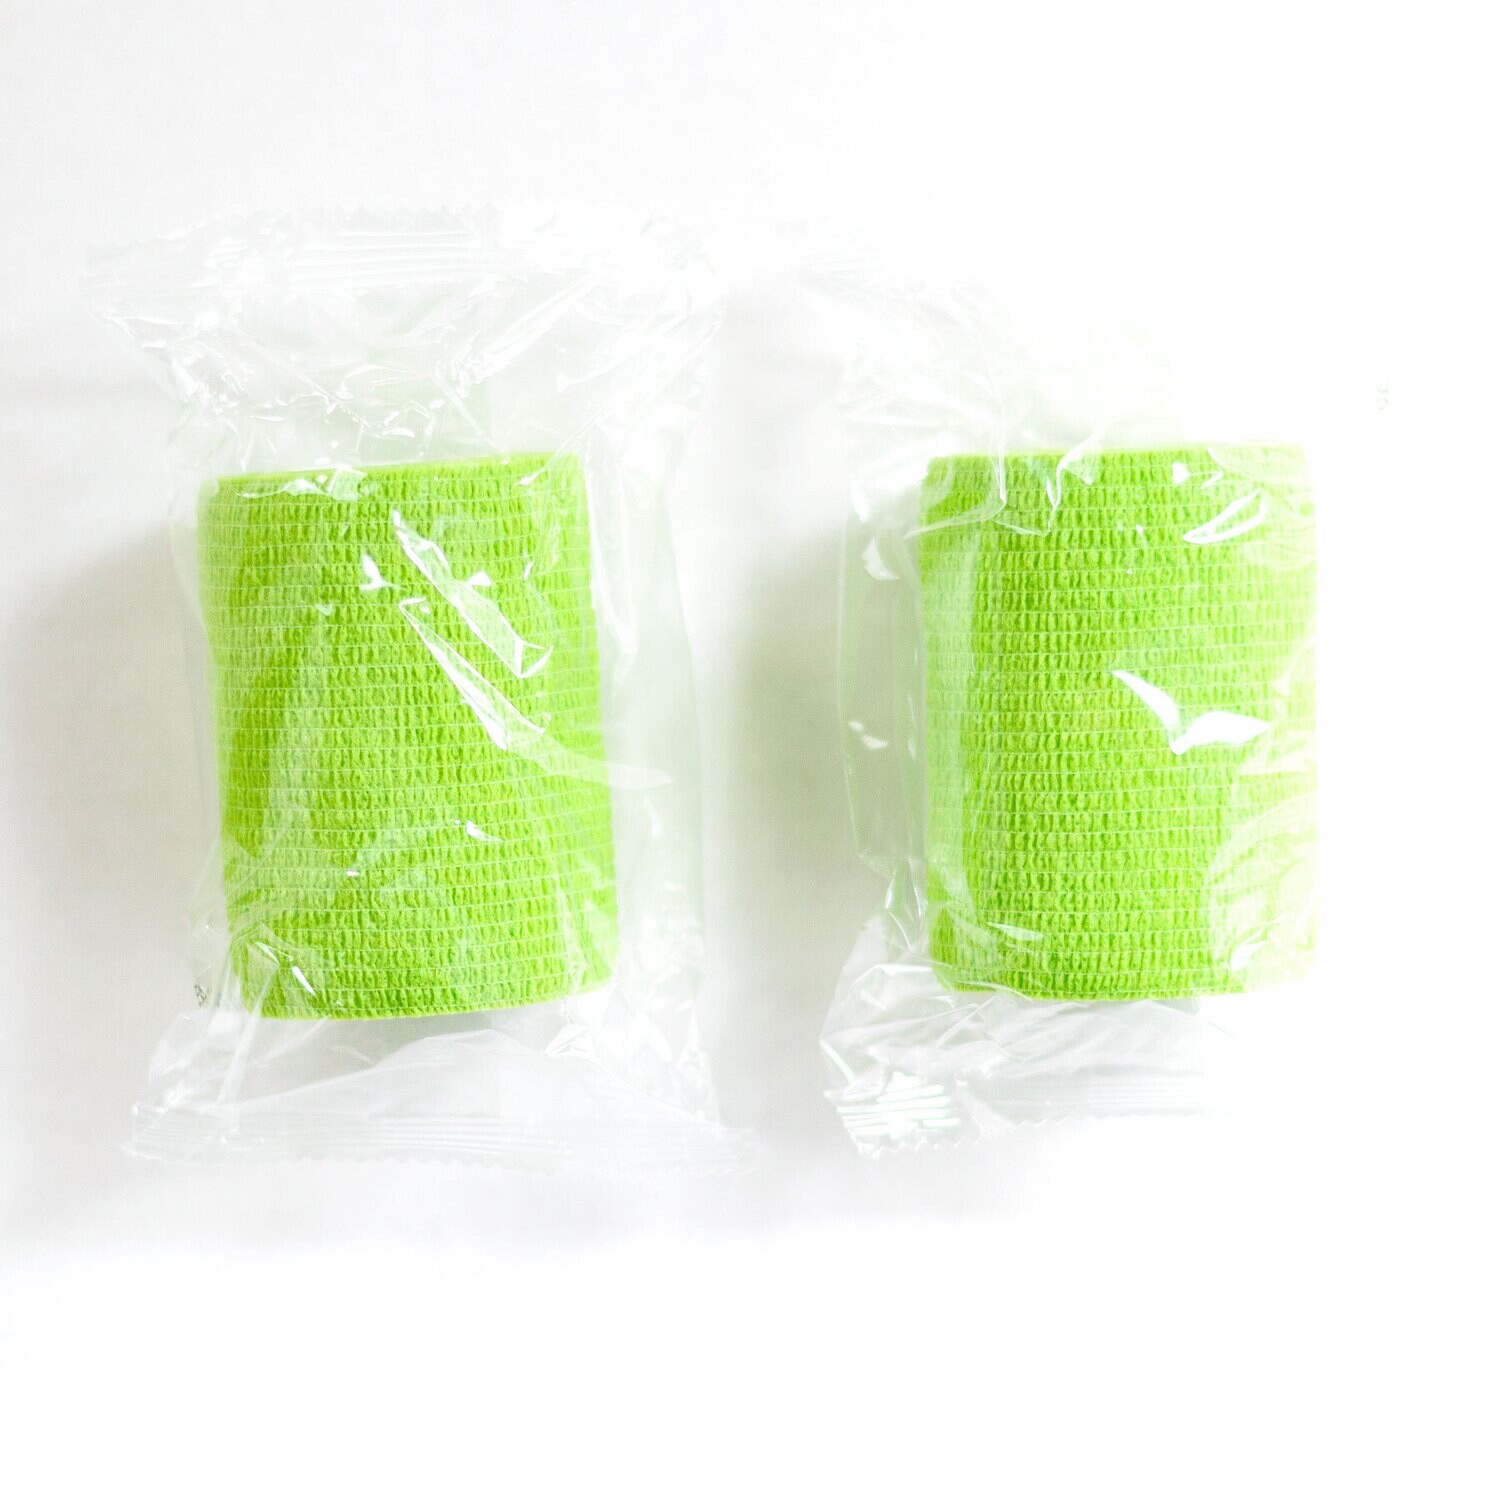 Grass Green Bandage Wrap